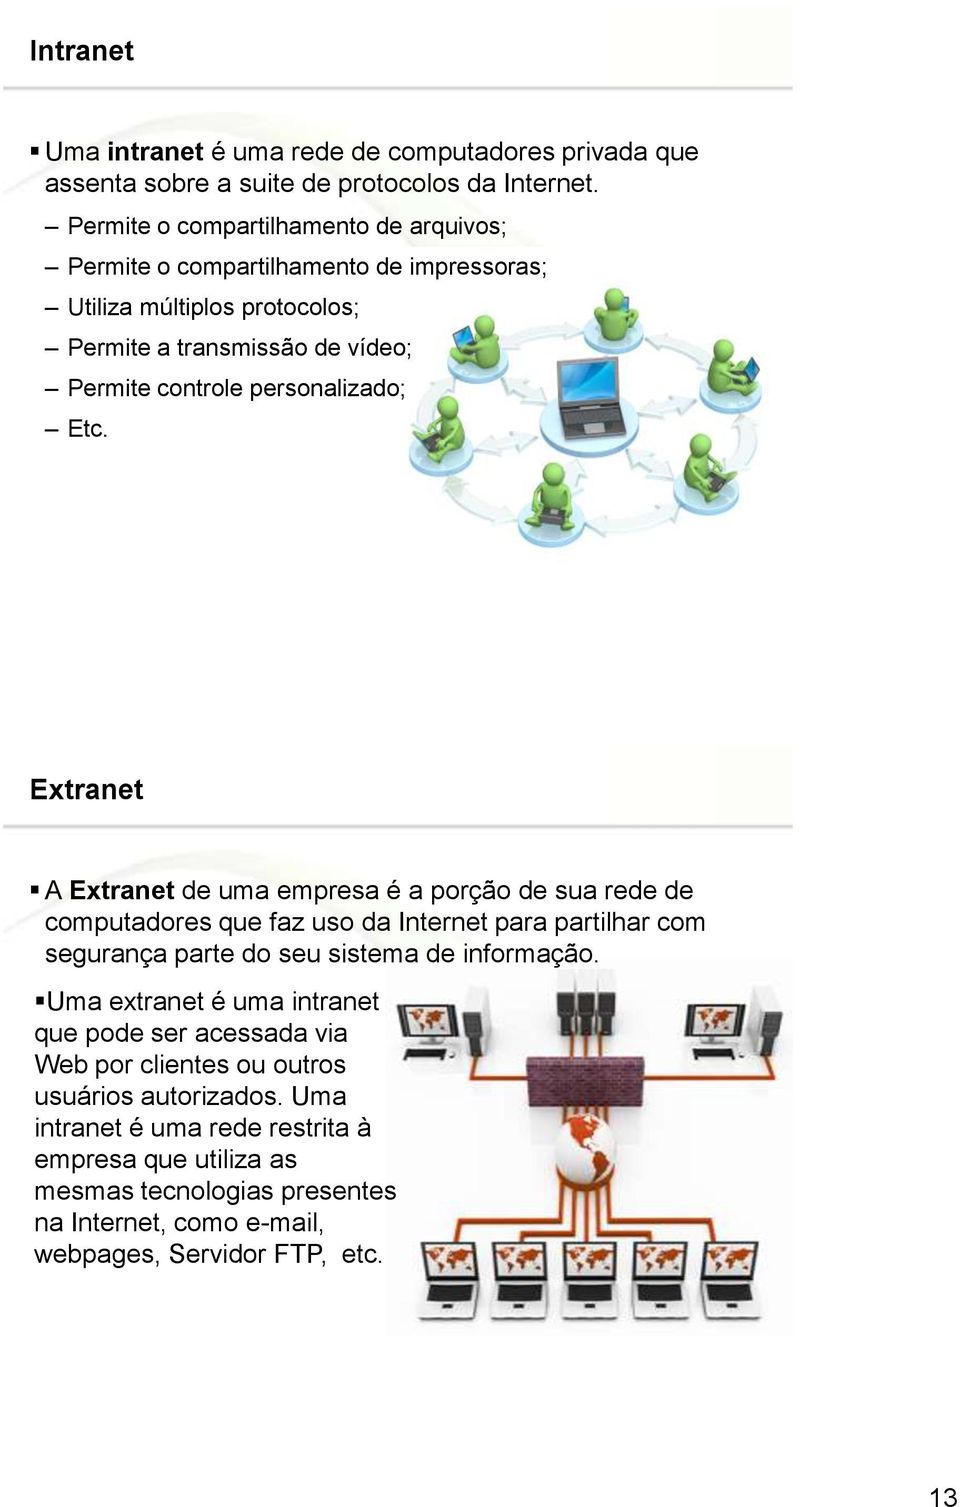 Etc. Page 25 Extranet A Extranet de uma empresa é a porção de sua rede de computadores que faz uso da Internet para partilhar com segurança parte do seu sistema de informação.